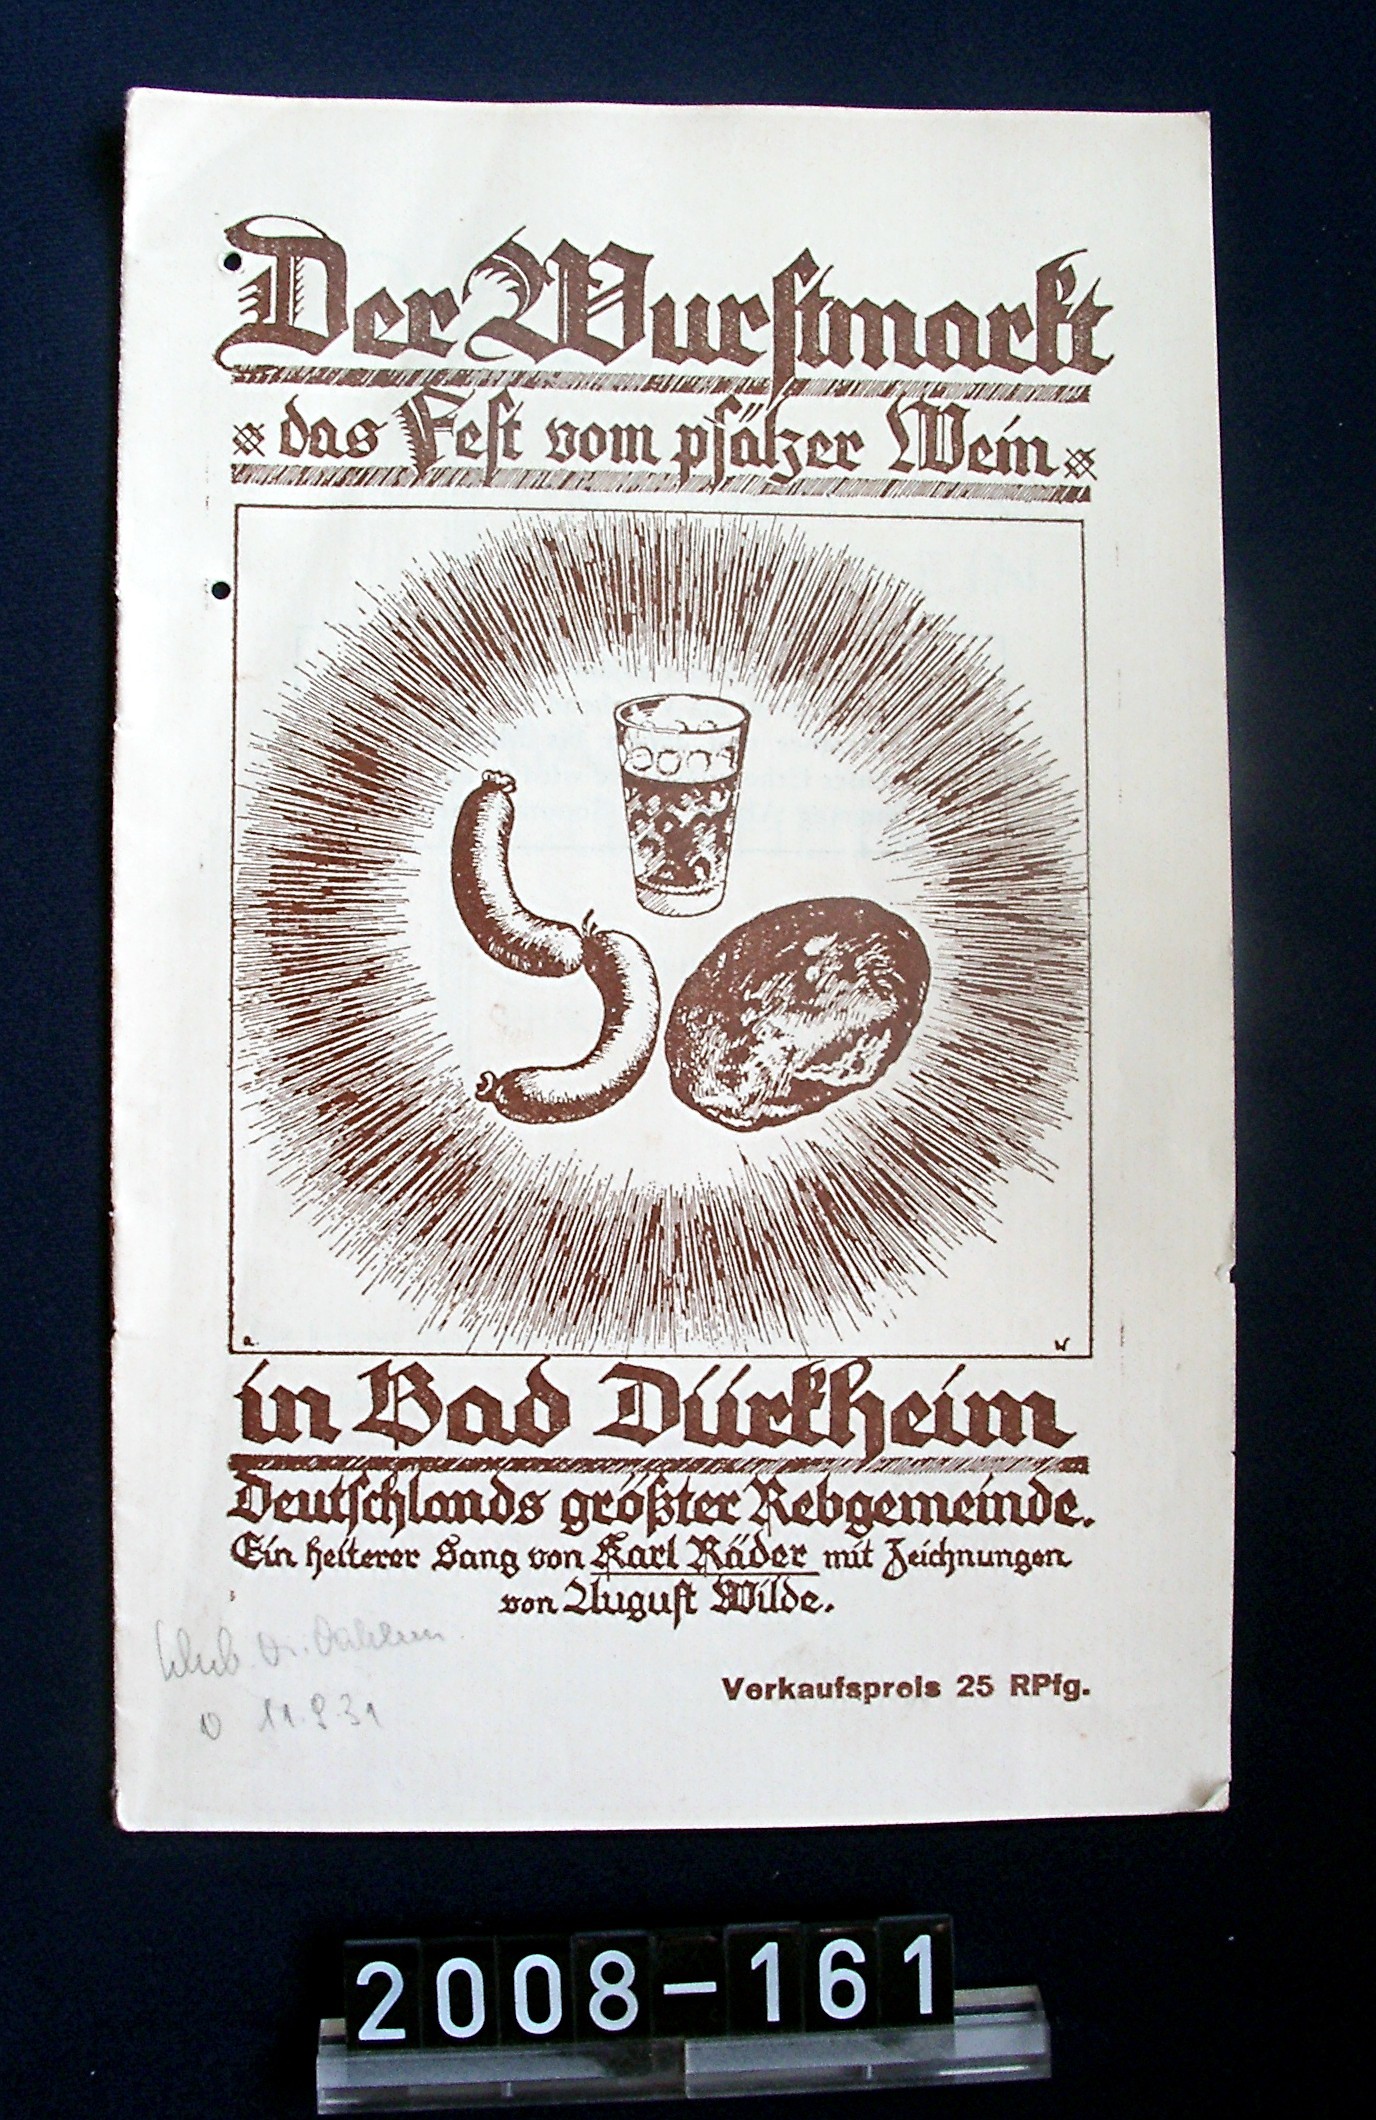 Broschüre; "Der Wurstmarkt"; Sang von Karl Räder, Zeichnungen von Aug. Wilde; 1931 (Stadtmuseum Bad Dürkheim, Museumsgesellschaft Bad Dürkheim e.V. CC BY-NC-SA)